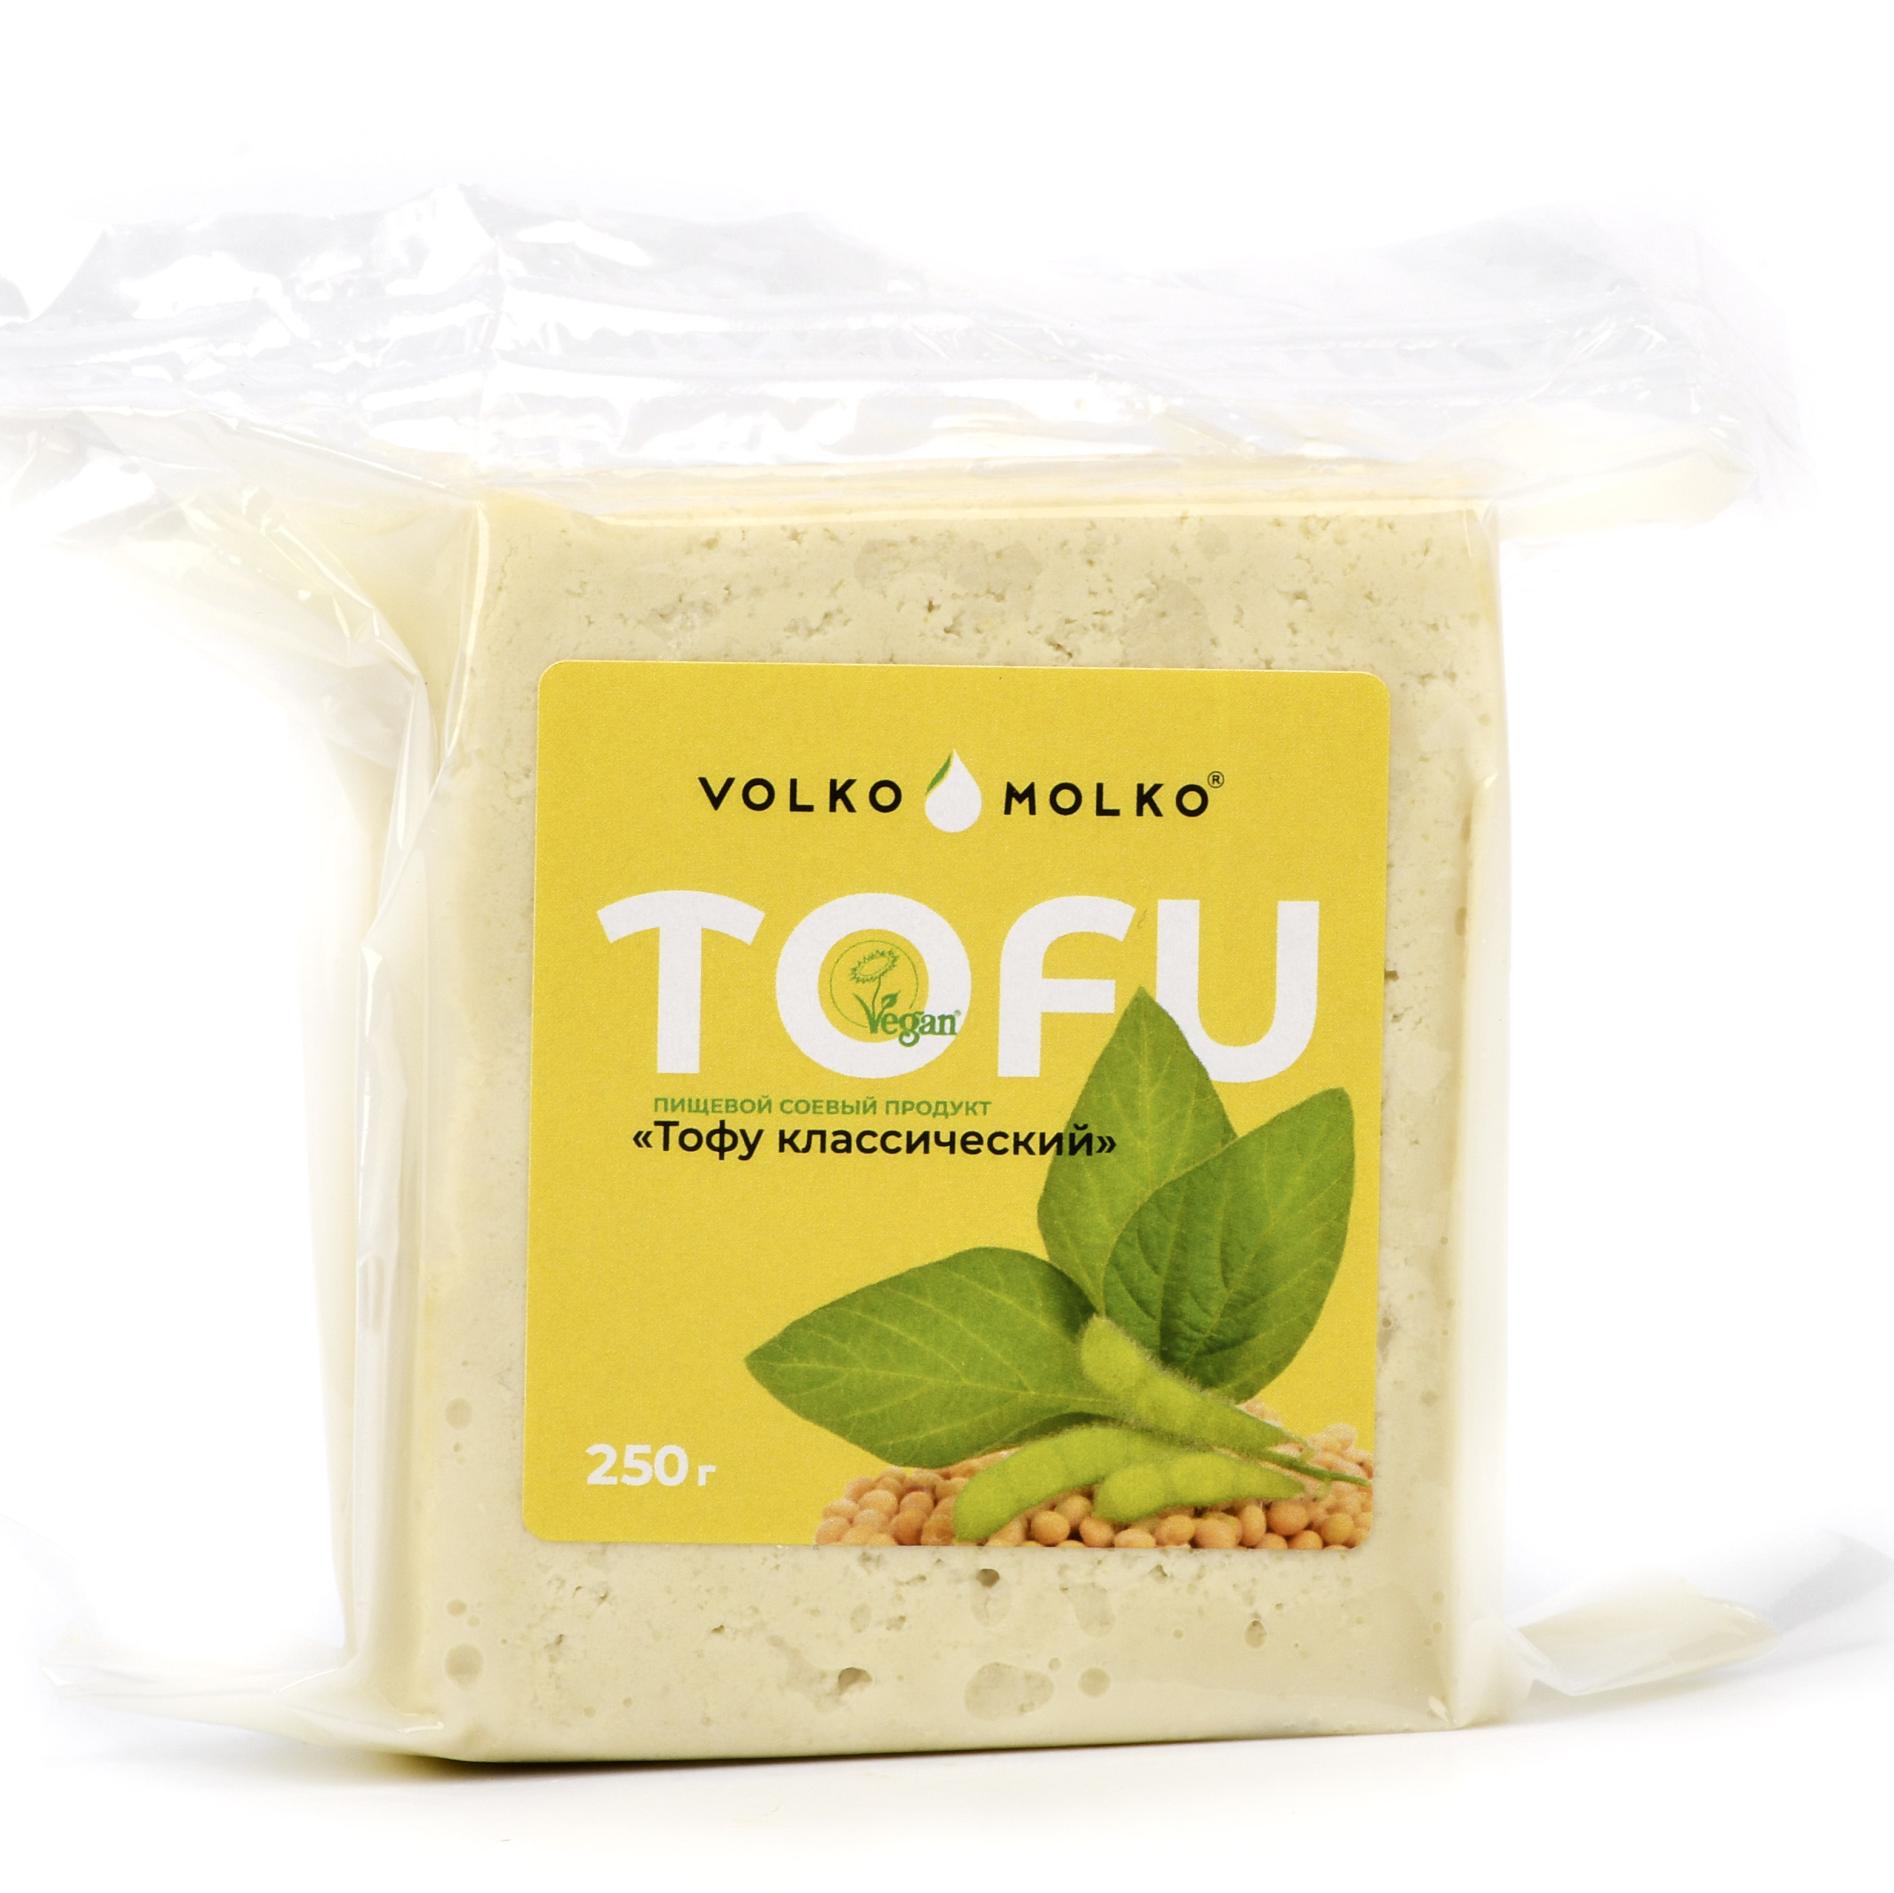 Сыр веганский Тофу классический, Volko Molko - 250 г